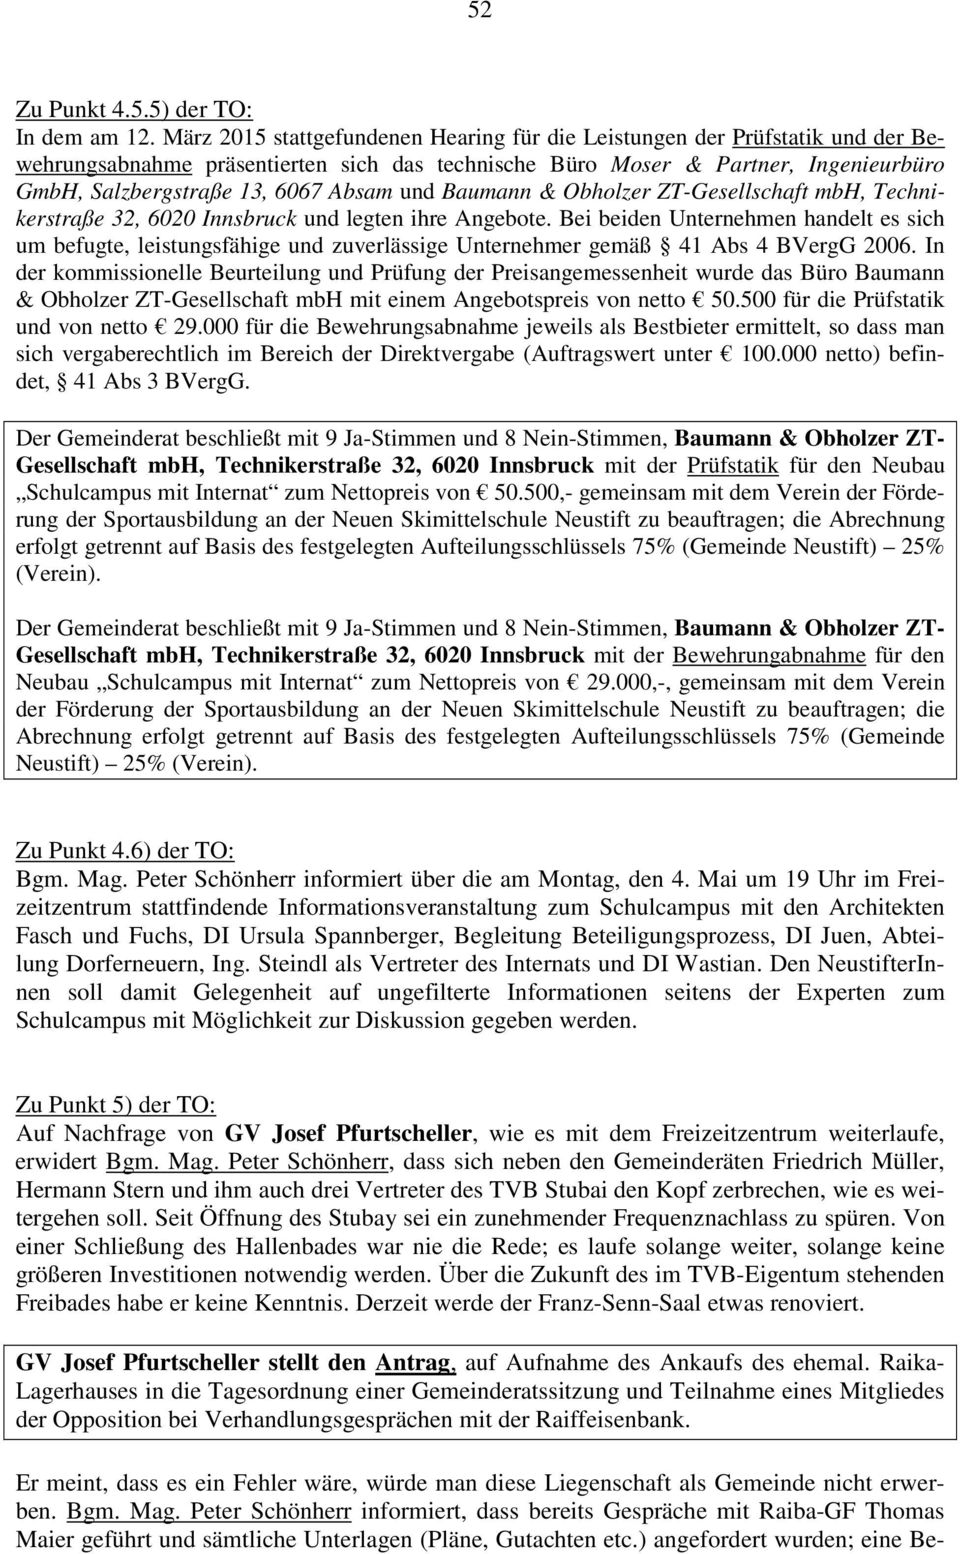 und Baumann & Obholzer ZT-Gesellschaft mbh, Technikerstraße 32, 6020 Innsbruck und legten ihre Angebote.